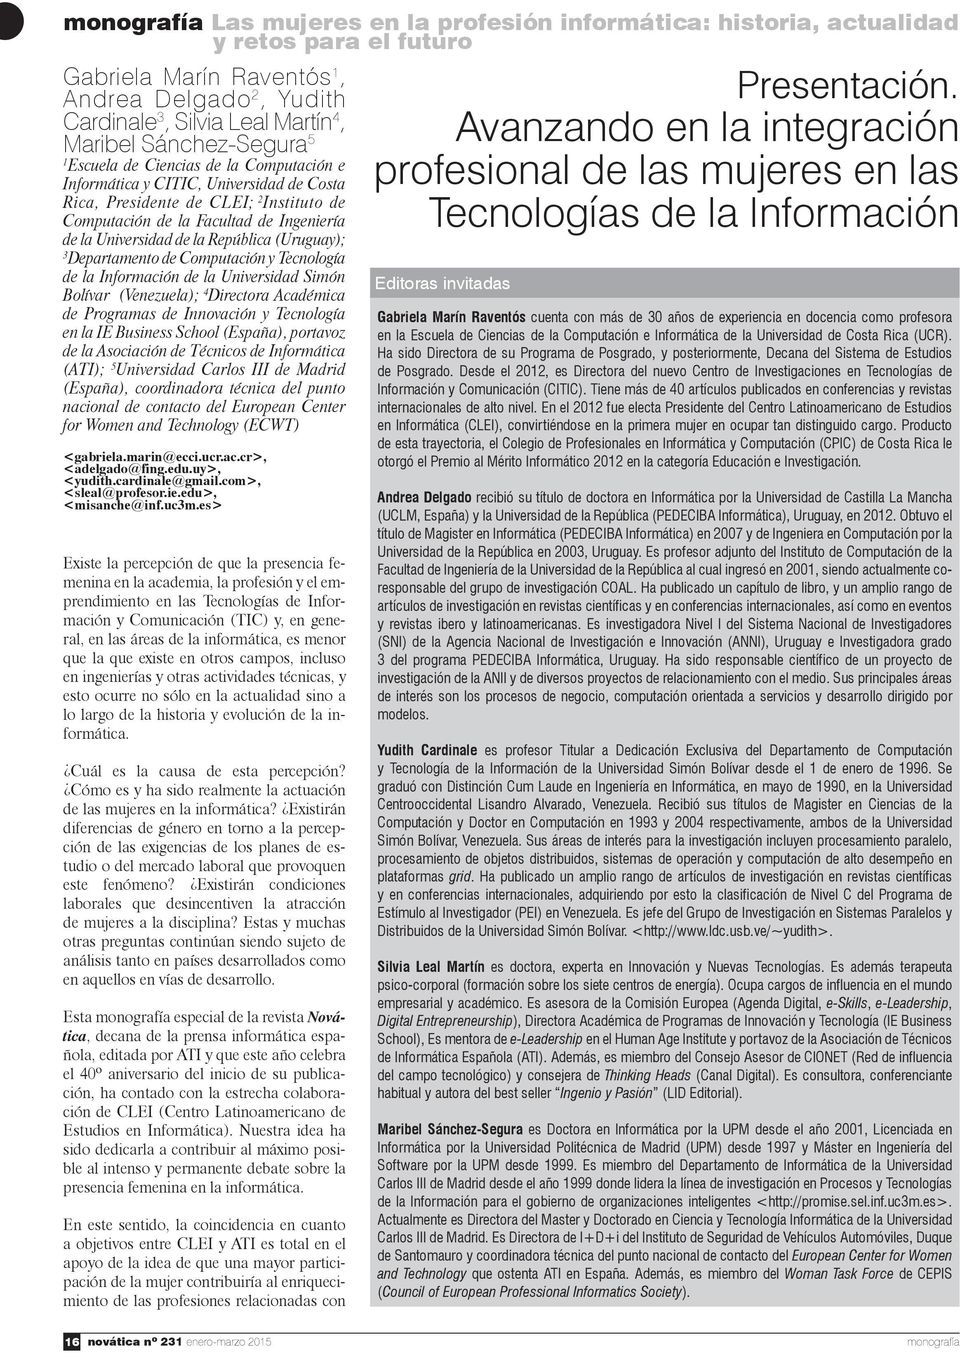 Departamento de Computación y Tecnología de la Información de la Universidad Simón Bolívar (Venezuela); 4 Directora Académica de Programas de Innovación y Tecnología en la IE Business School